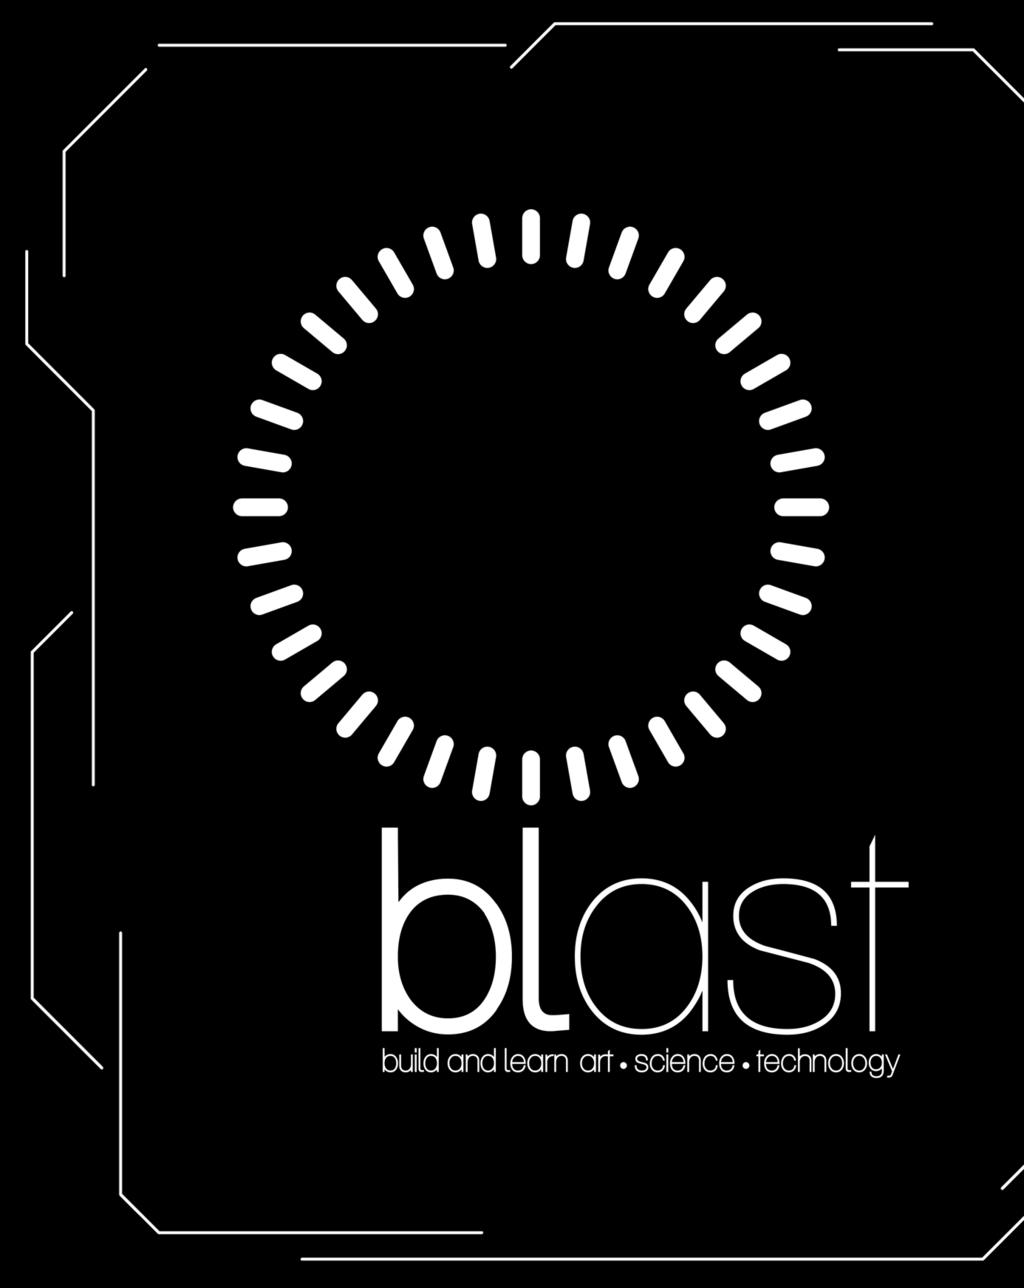 η blast πάντα ένα βήμα μπροστά Τον Μάιο του 2015 ο ιδρυτής της blast διοργανώνει το 1ο International ROBOT MAK3R Day.